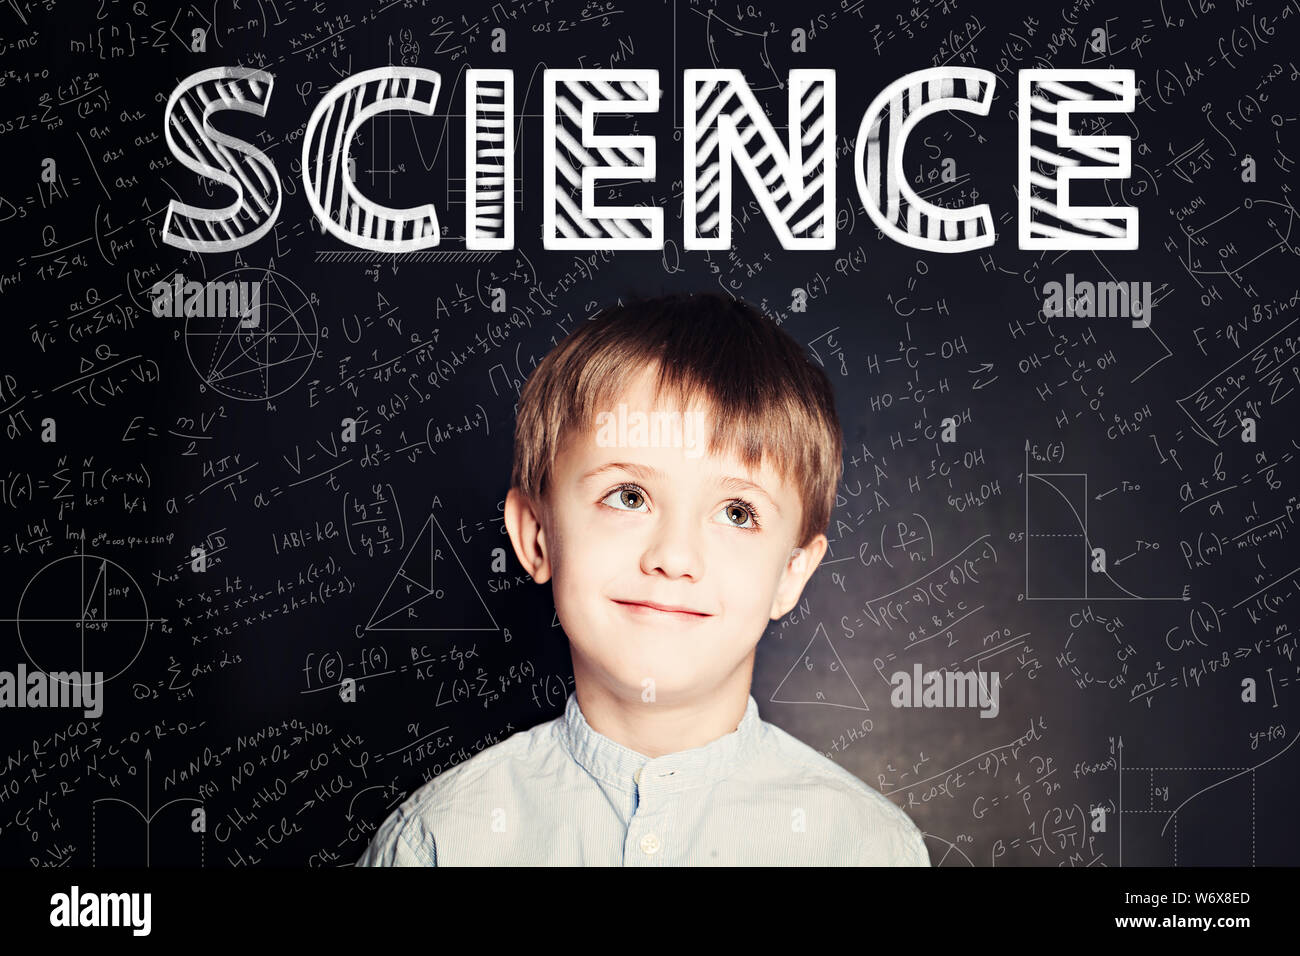 Lernen Wissenschaft Konzept. Clever student Kind auf blackboard Hintergrund mit mathematischen Formeln Stockfoto